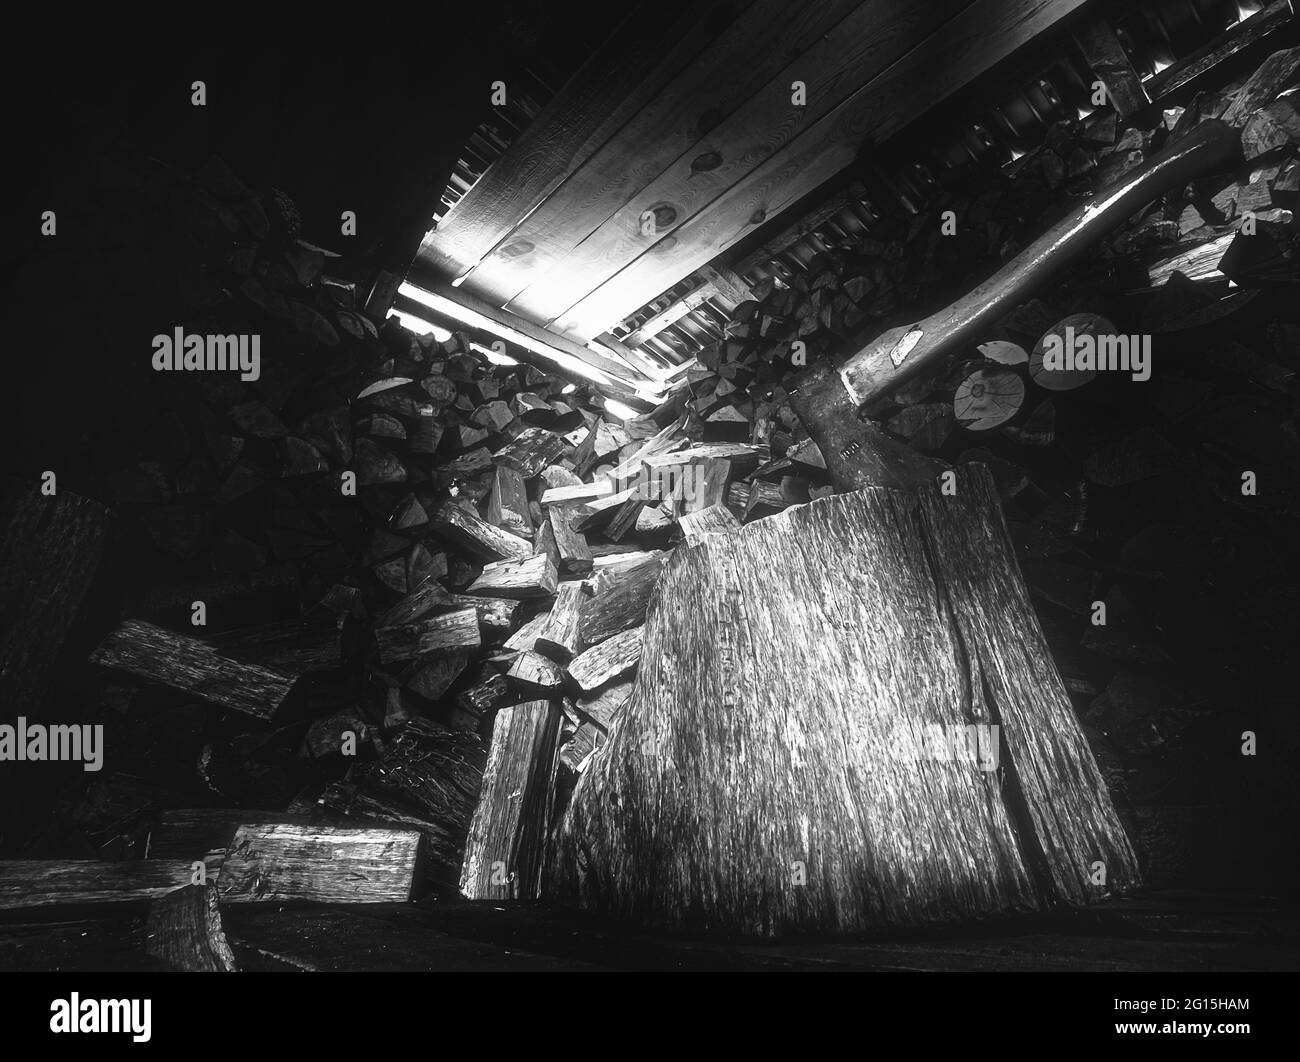 Holzschuppen mit bedrohlich wirkender Axt und großem Holzblock mit viel gestaltetem Feuerholz im Hintergrund. Lichteinfall im Holzschuppen Nahaufnahme Stockfoto